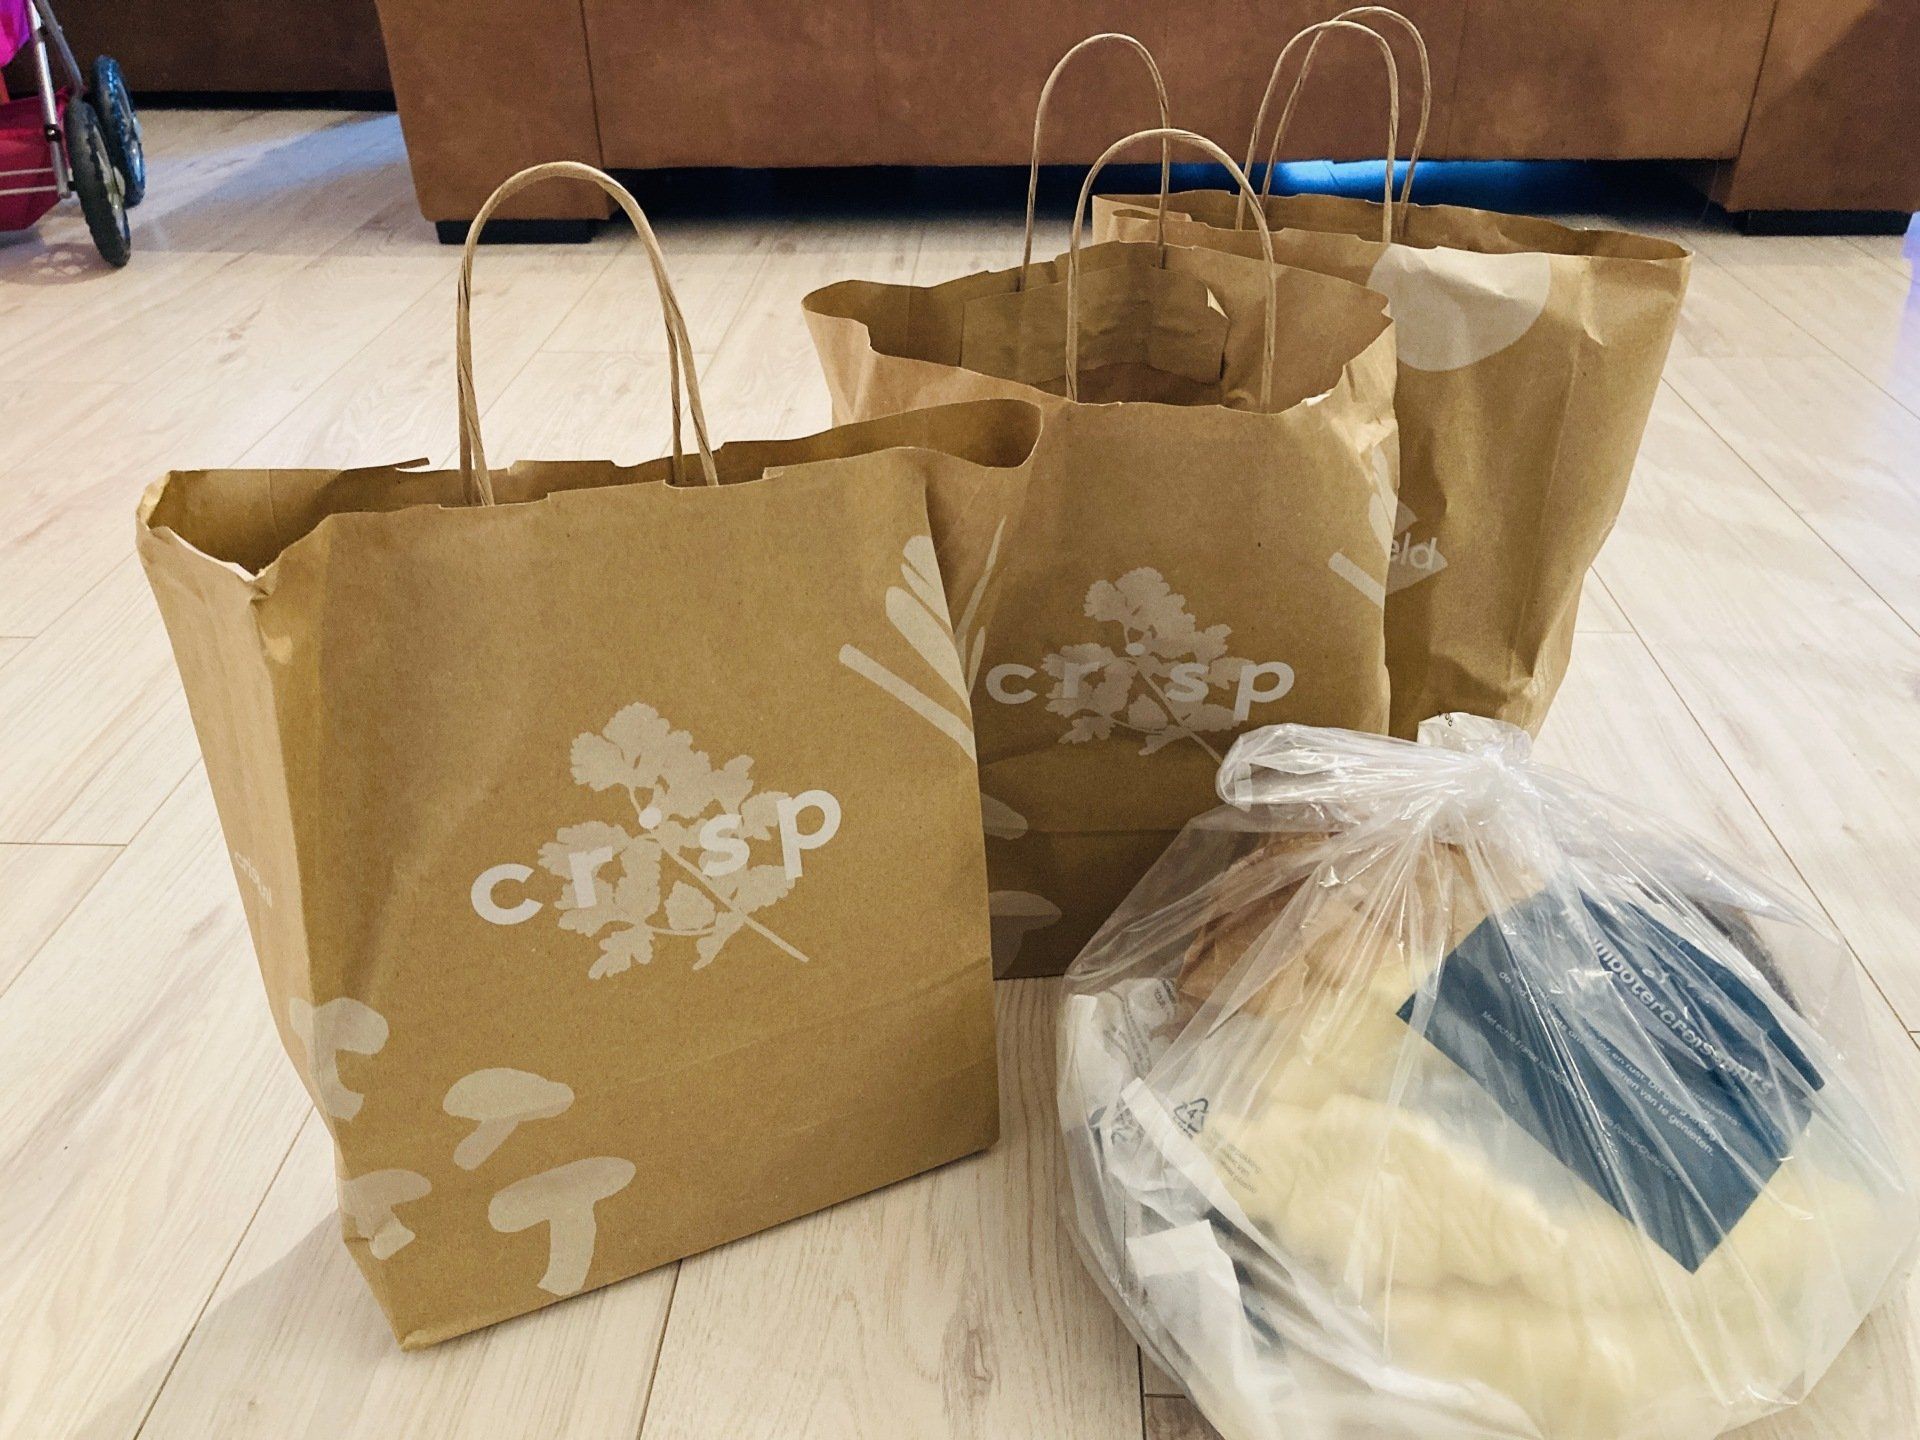 Onze boodschappen van Crisp, Shoplog en review